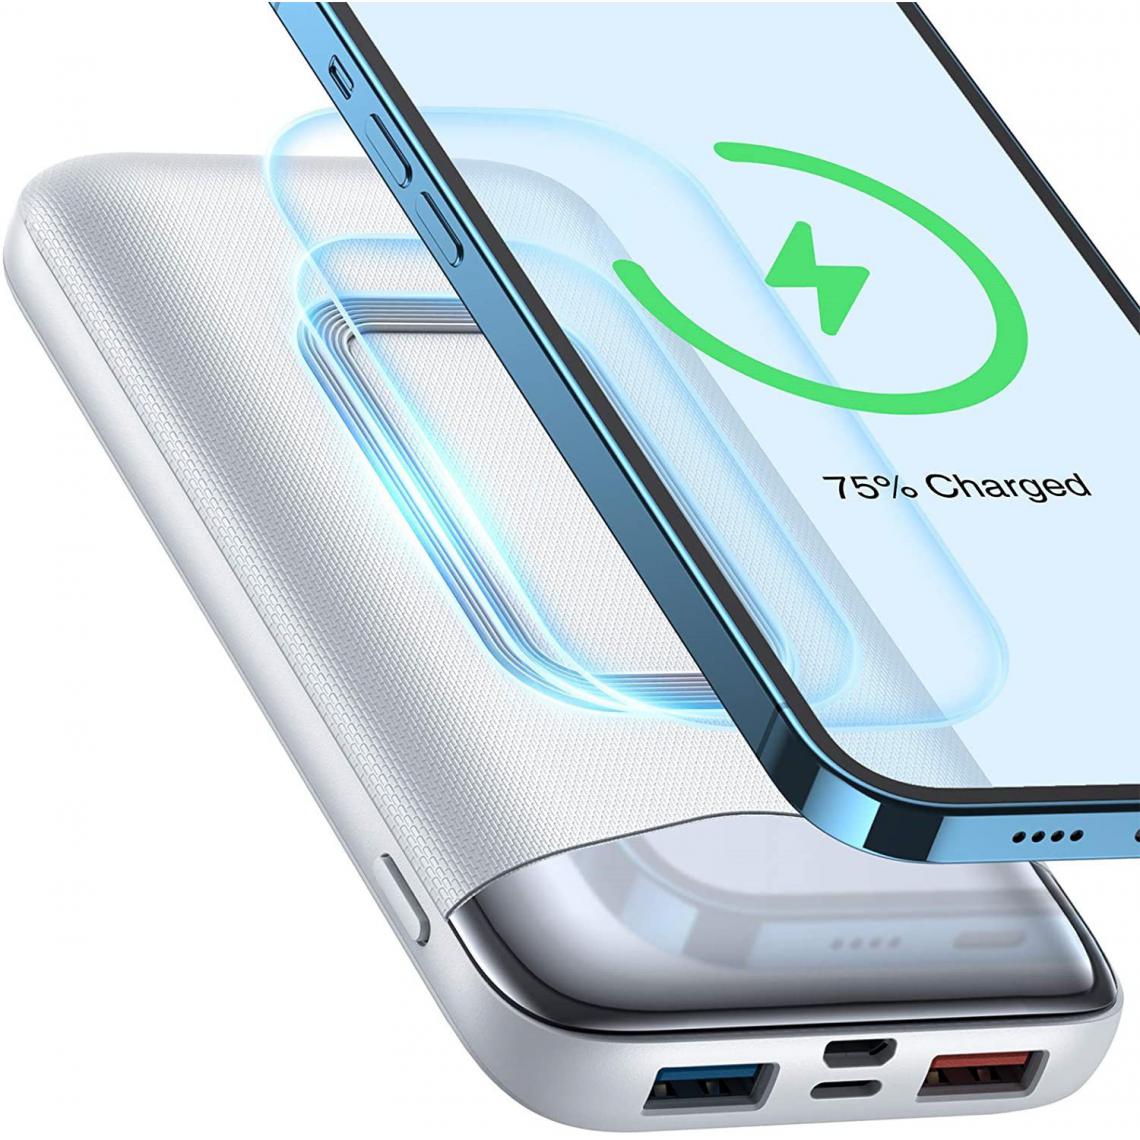 Chrono - Magnetic Wireless Power Bank 4225 mAh Batterie Externe Chargeur Portable (Blanc) - Chargeur secteur téléphone